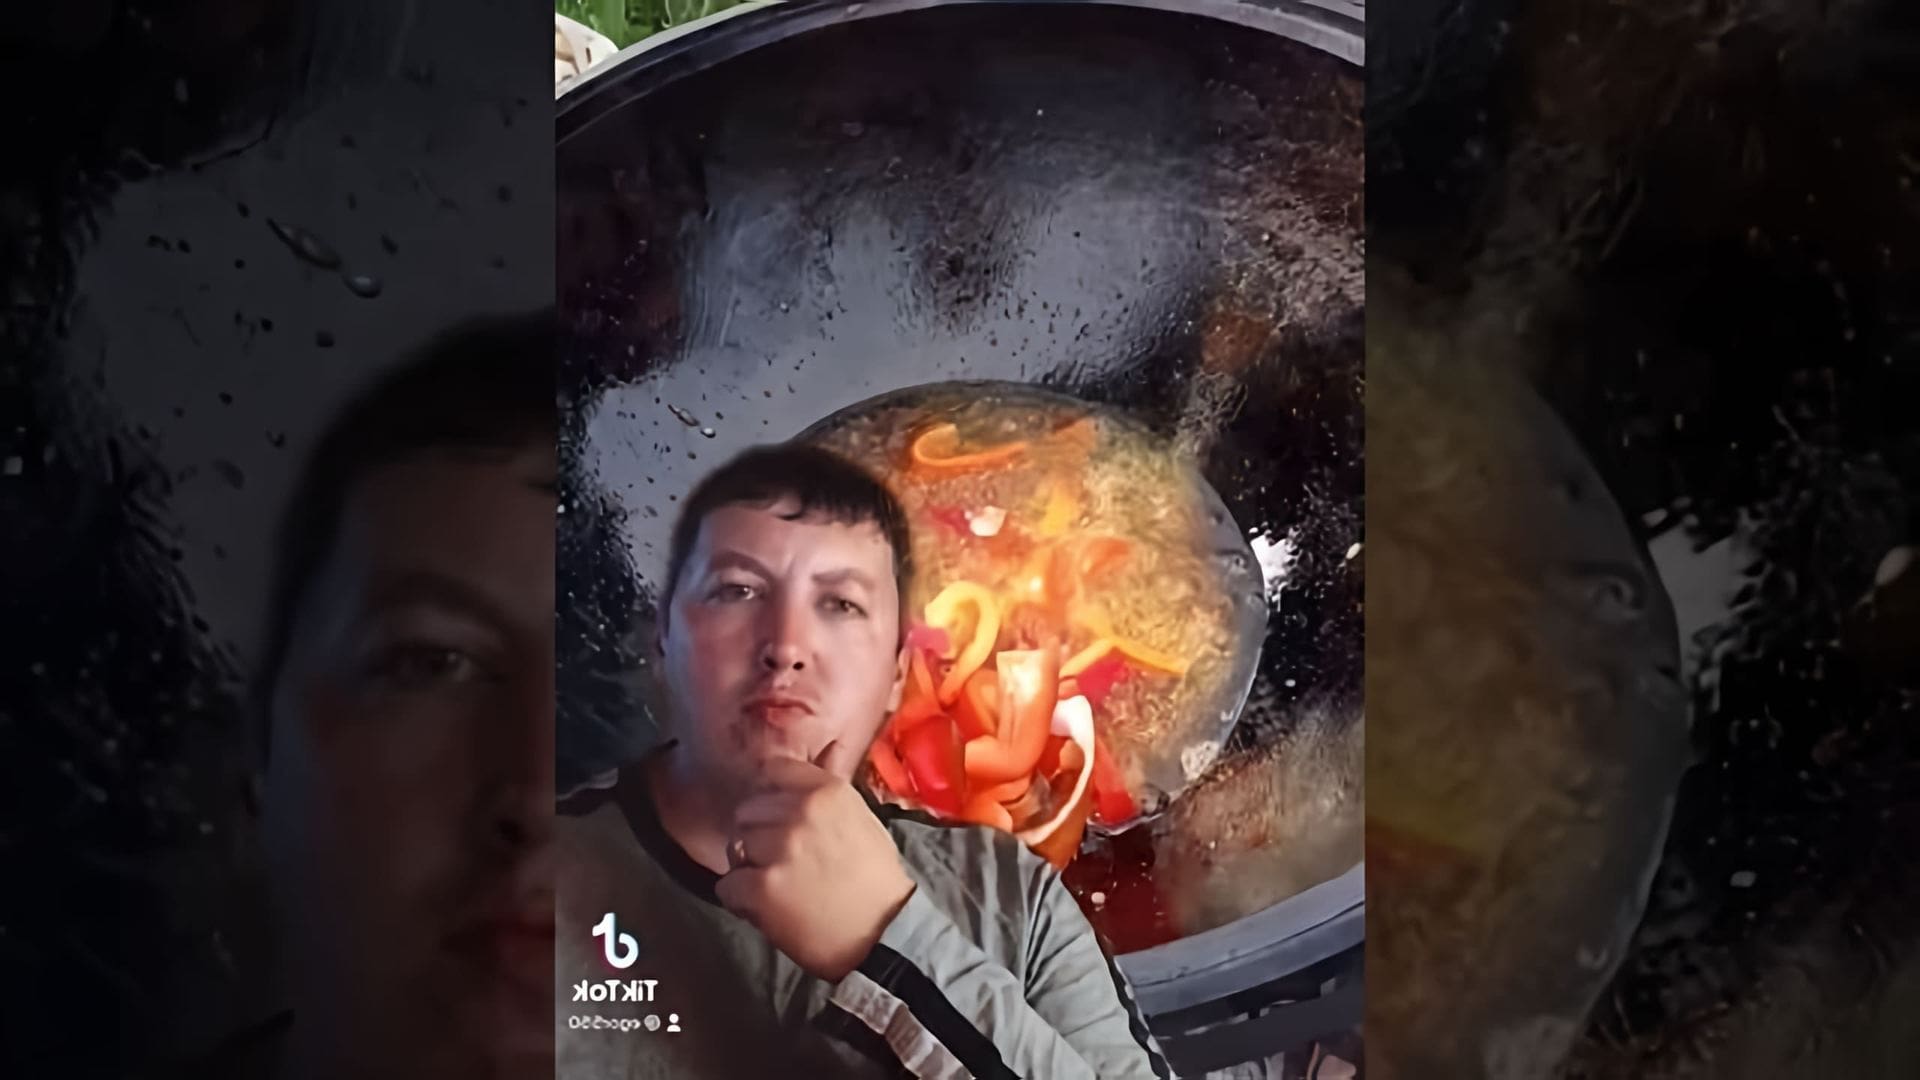 Рецепт для мужиков в казане на костре - это видео-ролик, который демонстрирует процесс приготовления блюда на открытом огне